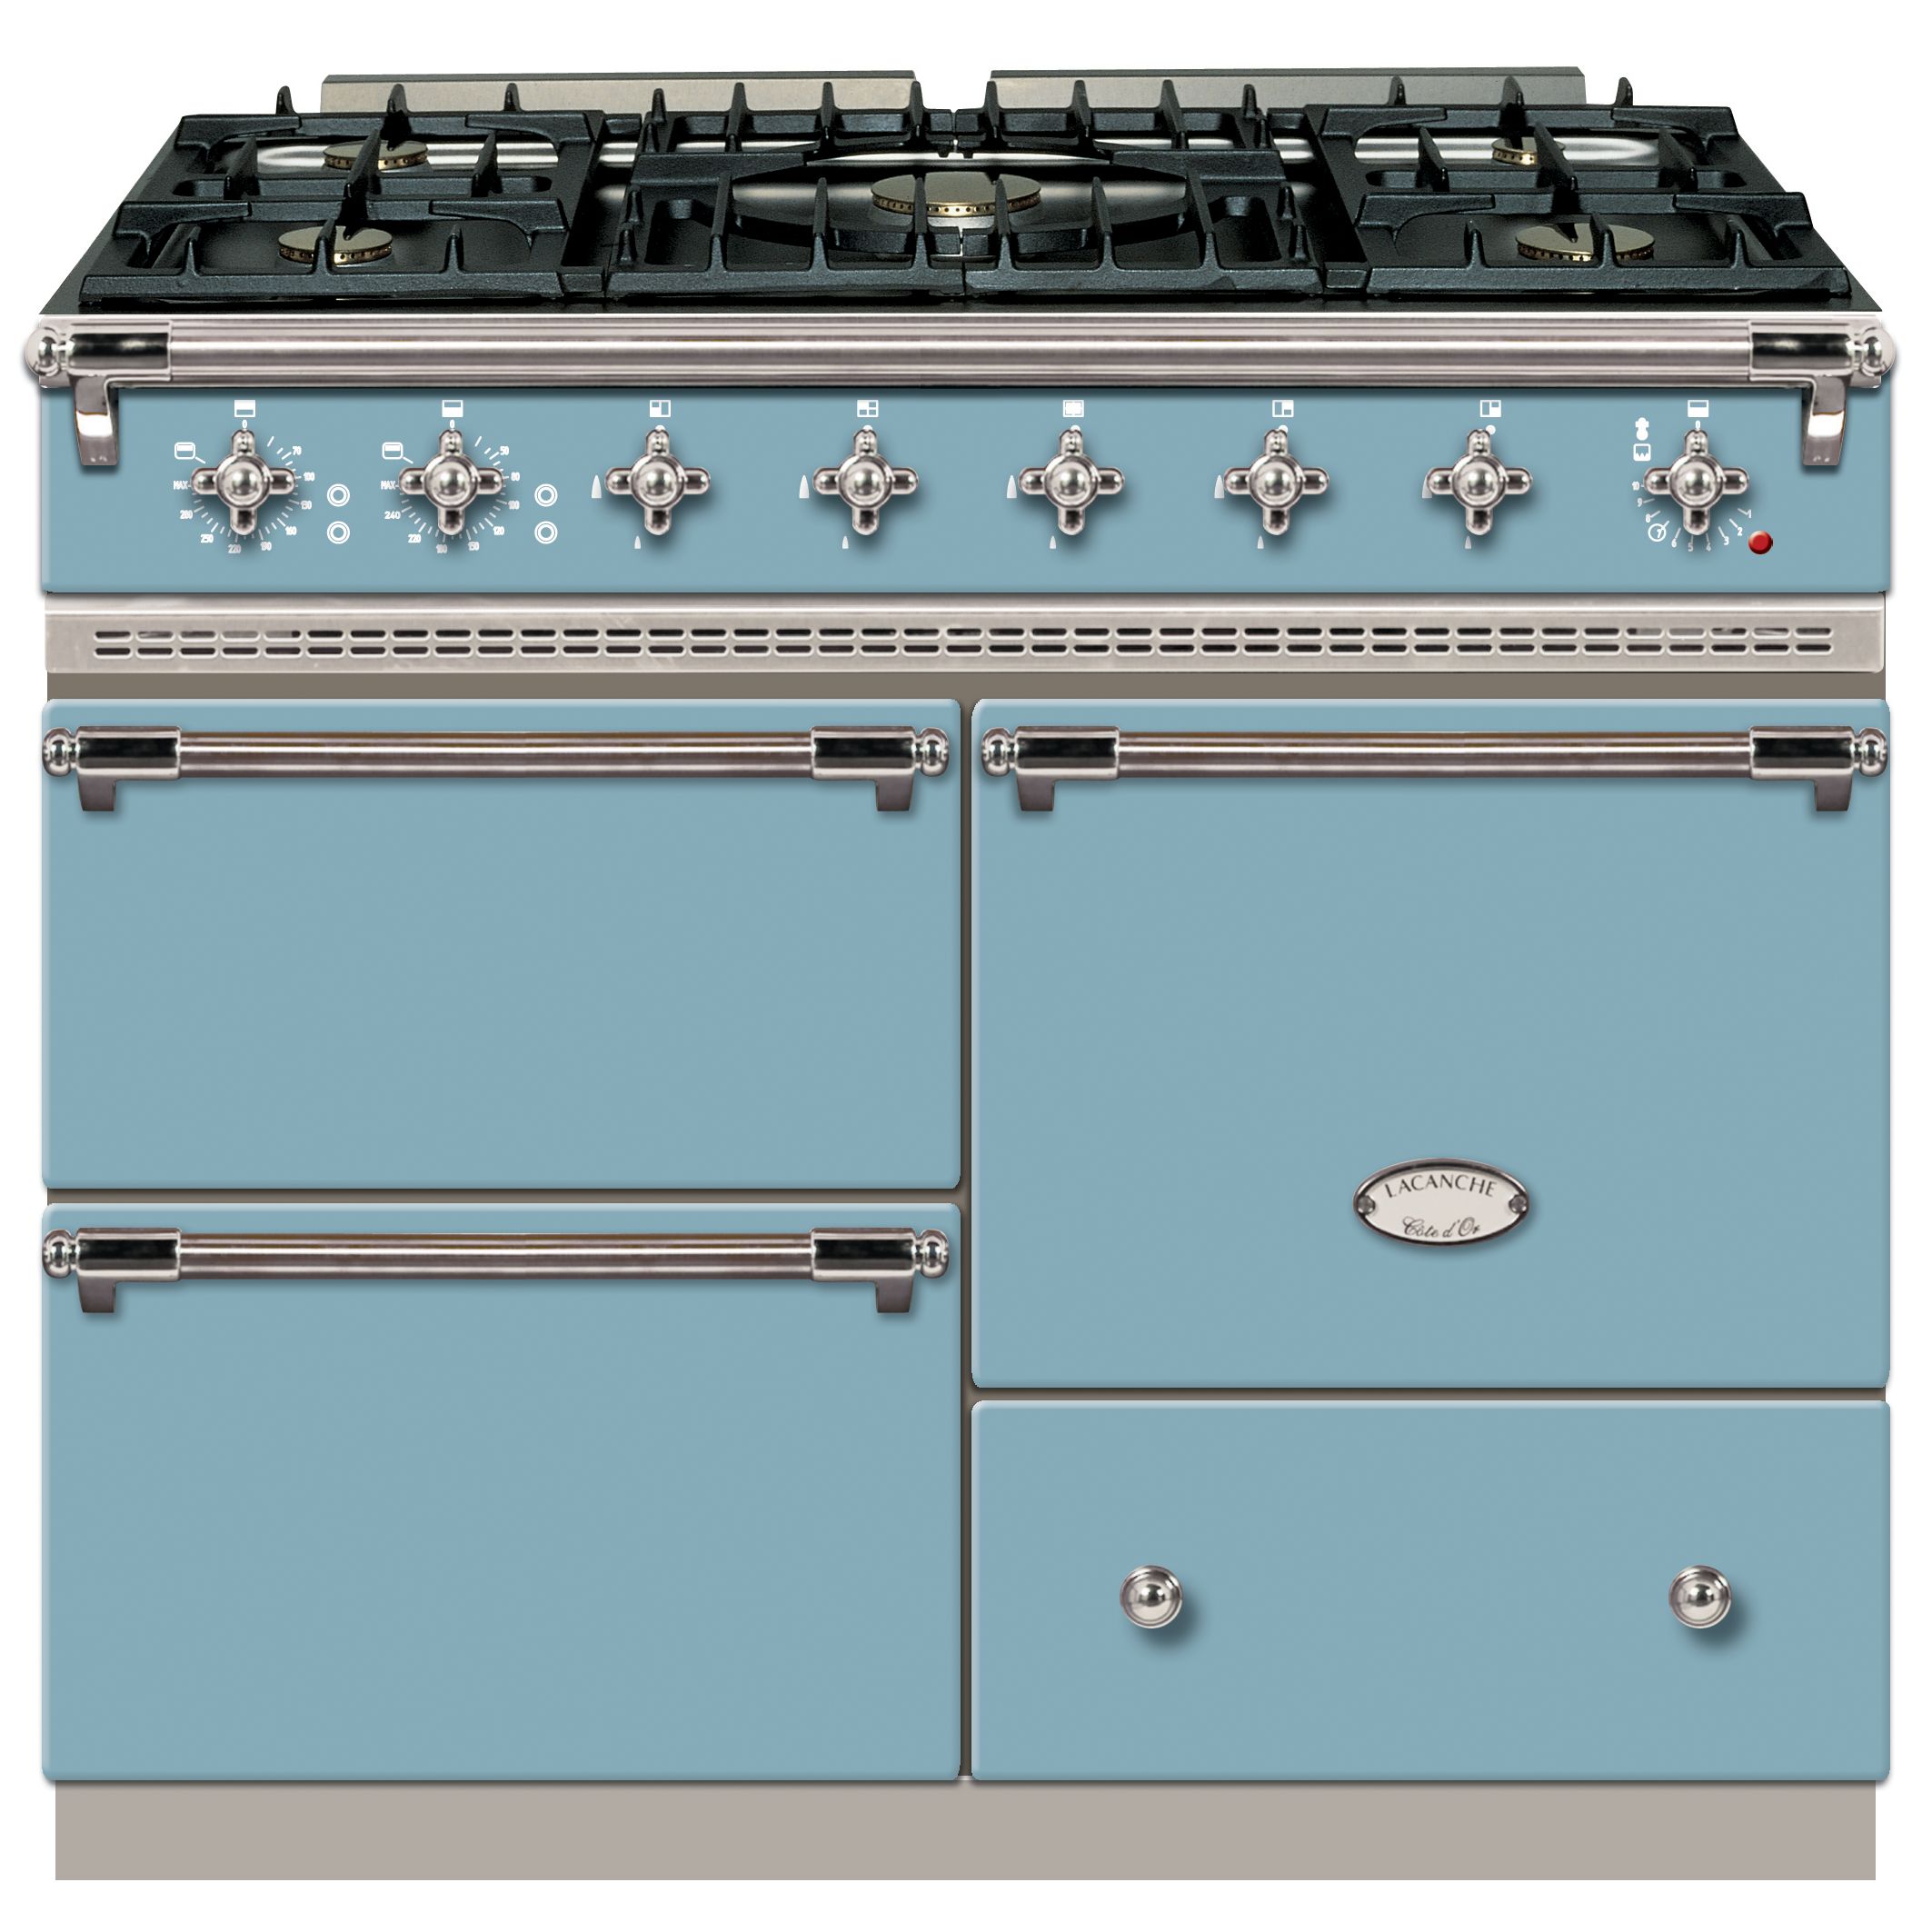 Lacanche Macon LG1053GECT Dual Fuel Cooker, Delft Blue / Chrome Trim at John Lewis